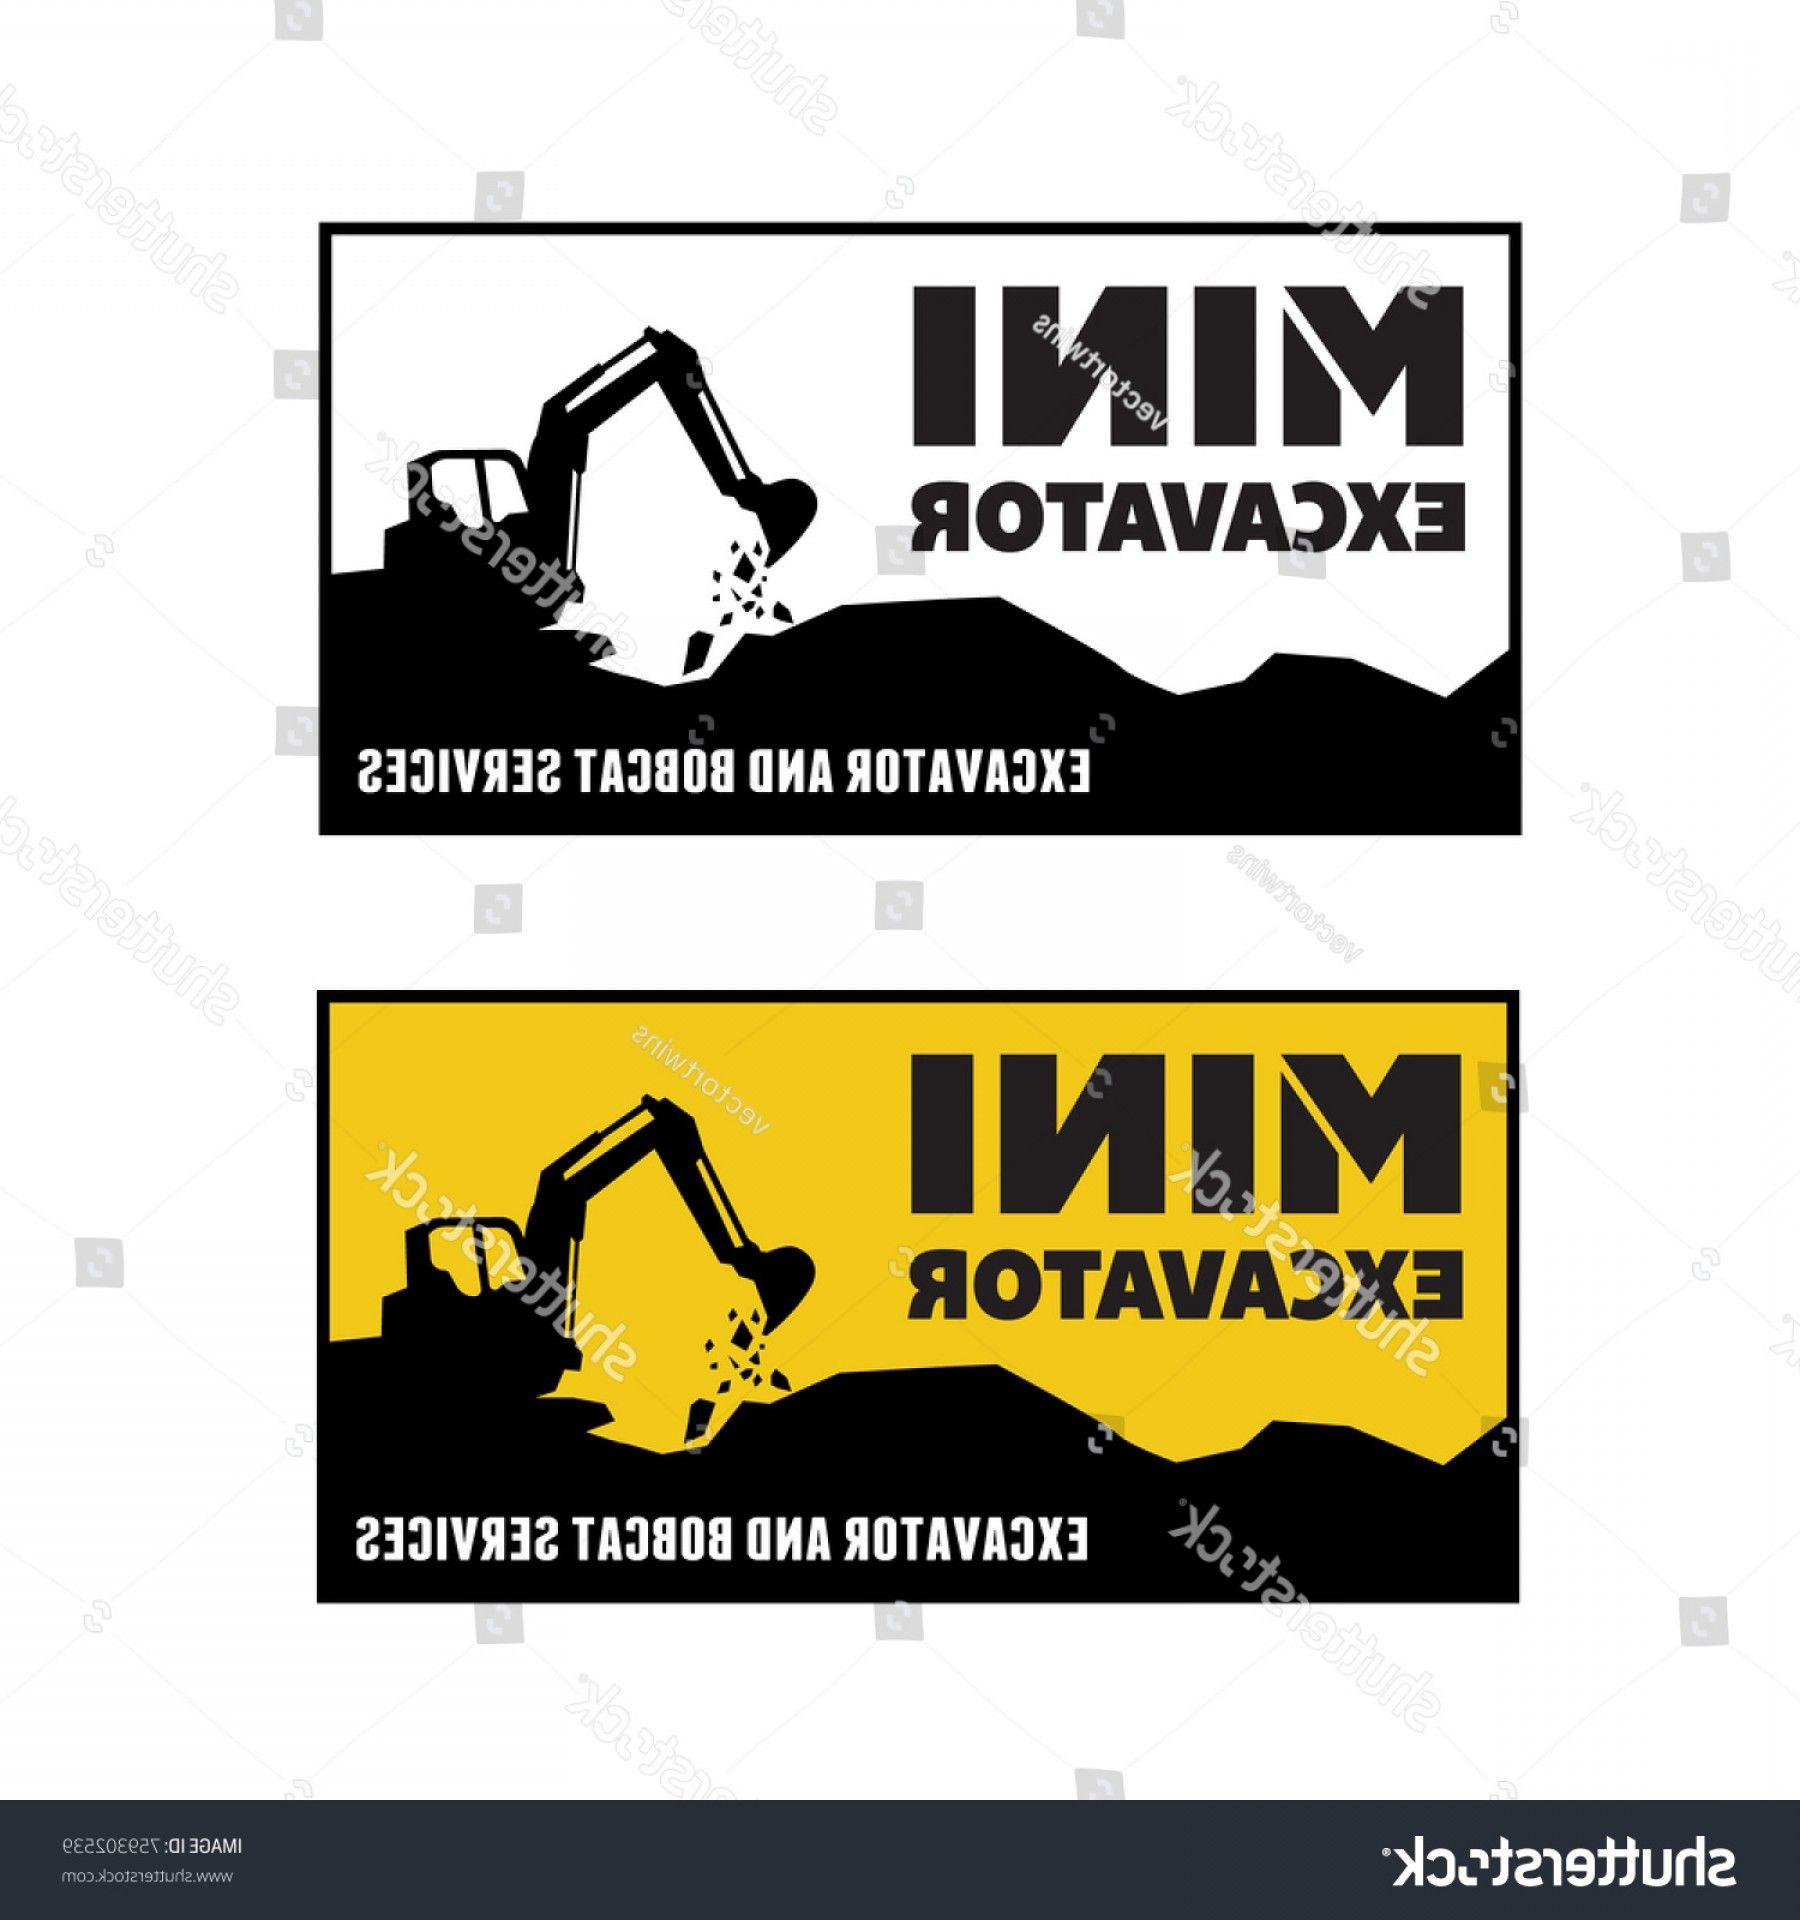 Backhoe Logo - Excavator Backhoe Logo Vector Illustration | catchsplace